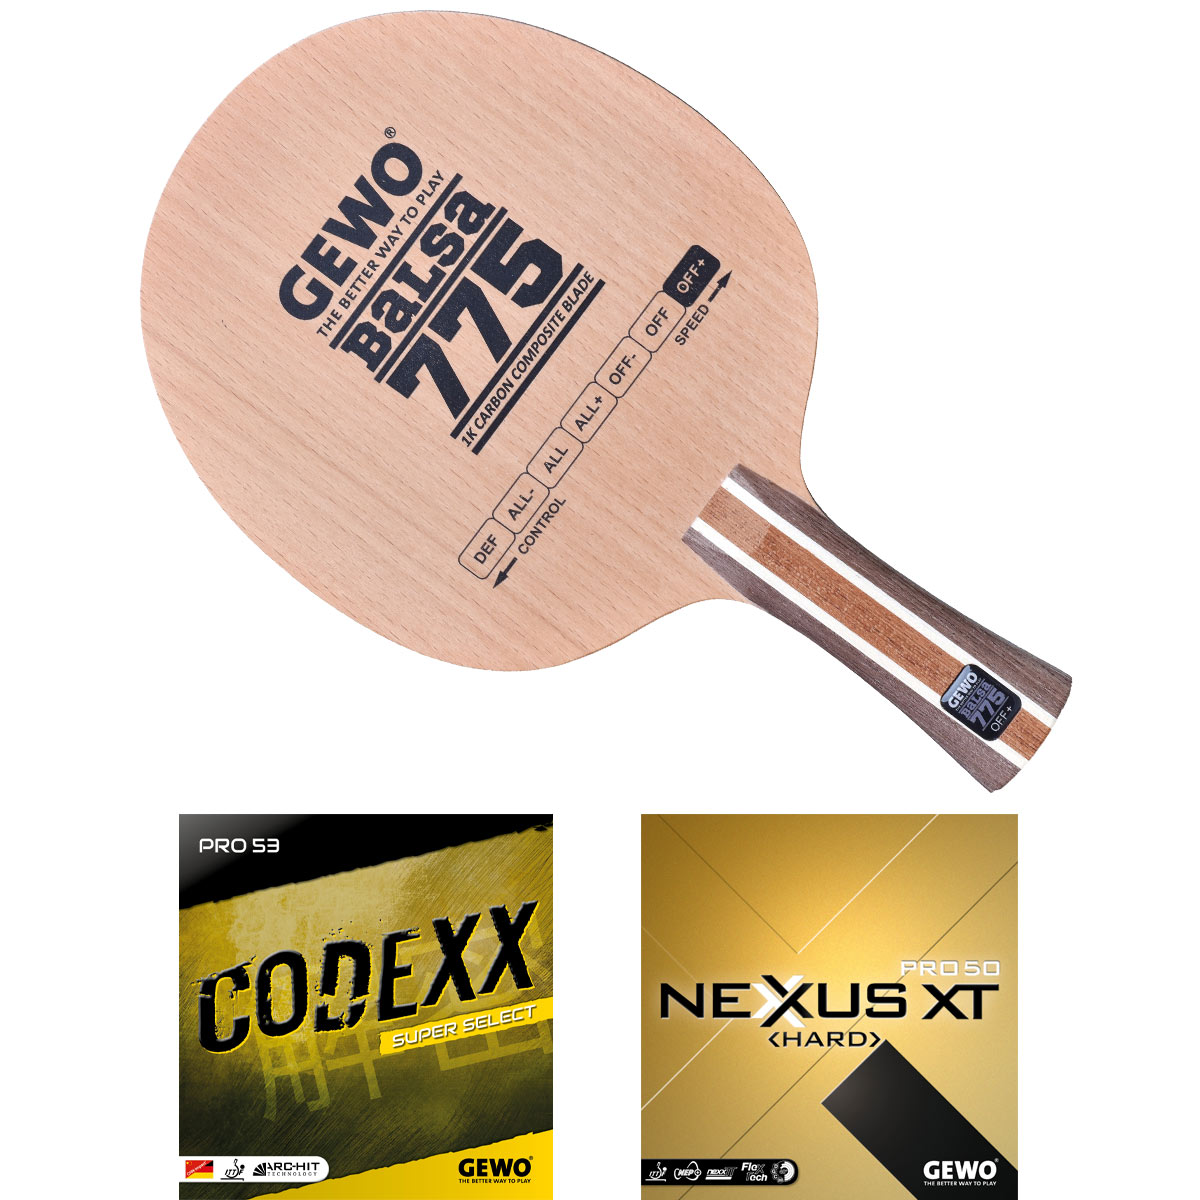 GEWO Schläger: Holz Balsa Carbon 775 mit Codexx Pro53 SupSel + Nexxus XT Pro50 Hard  gerade